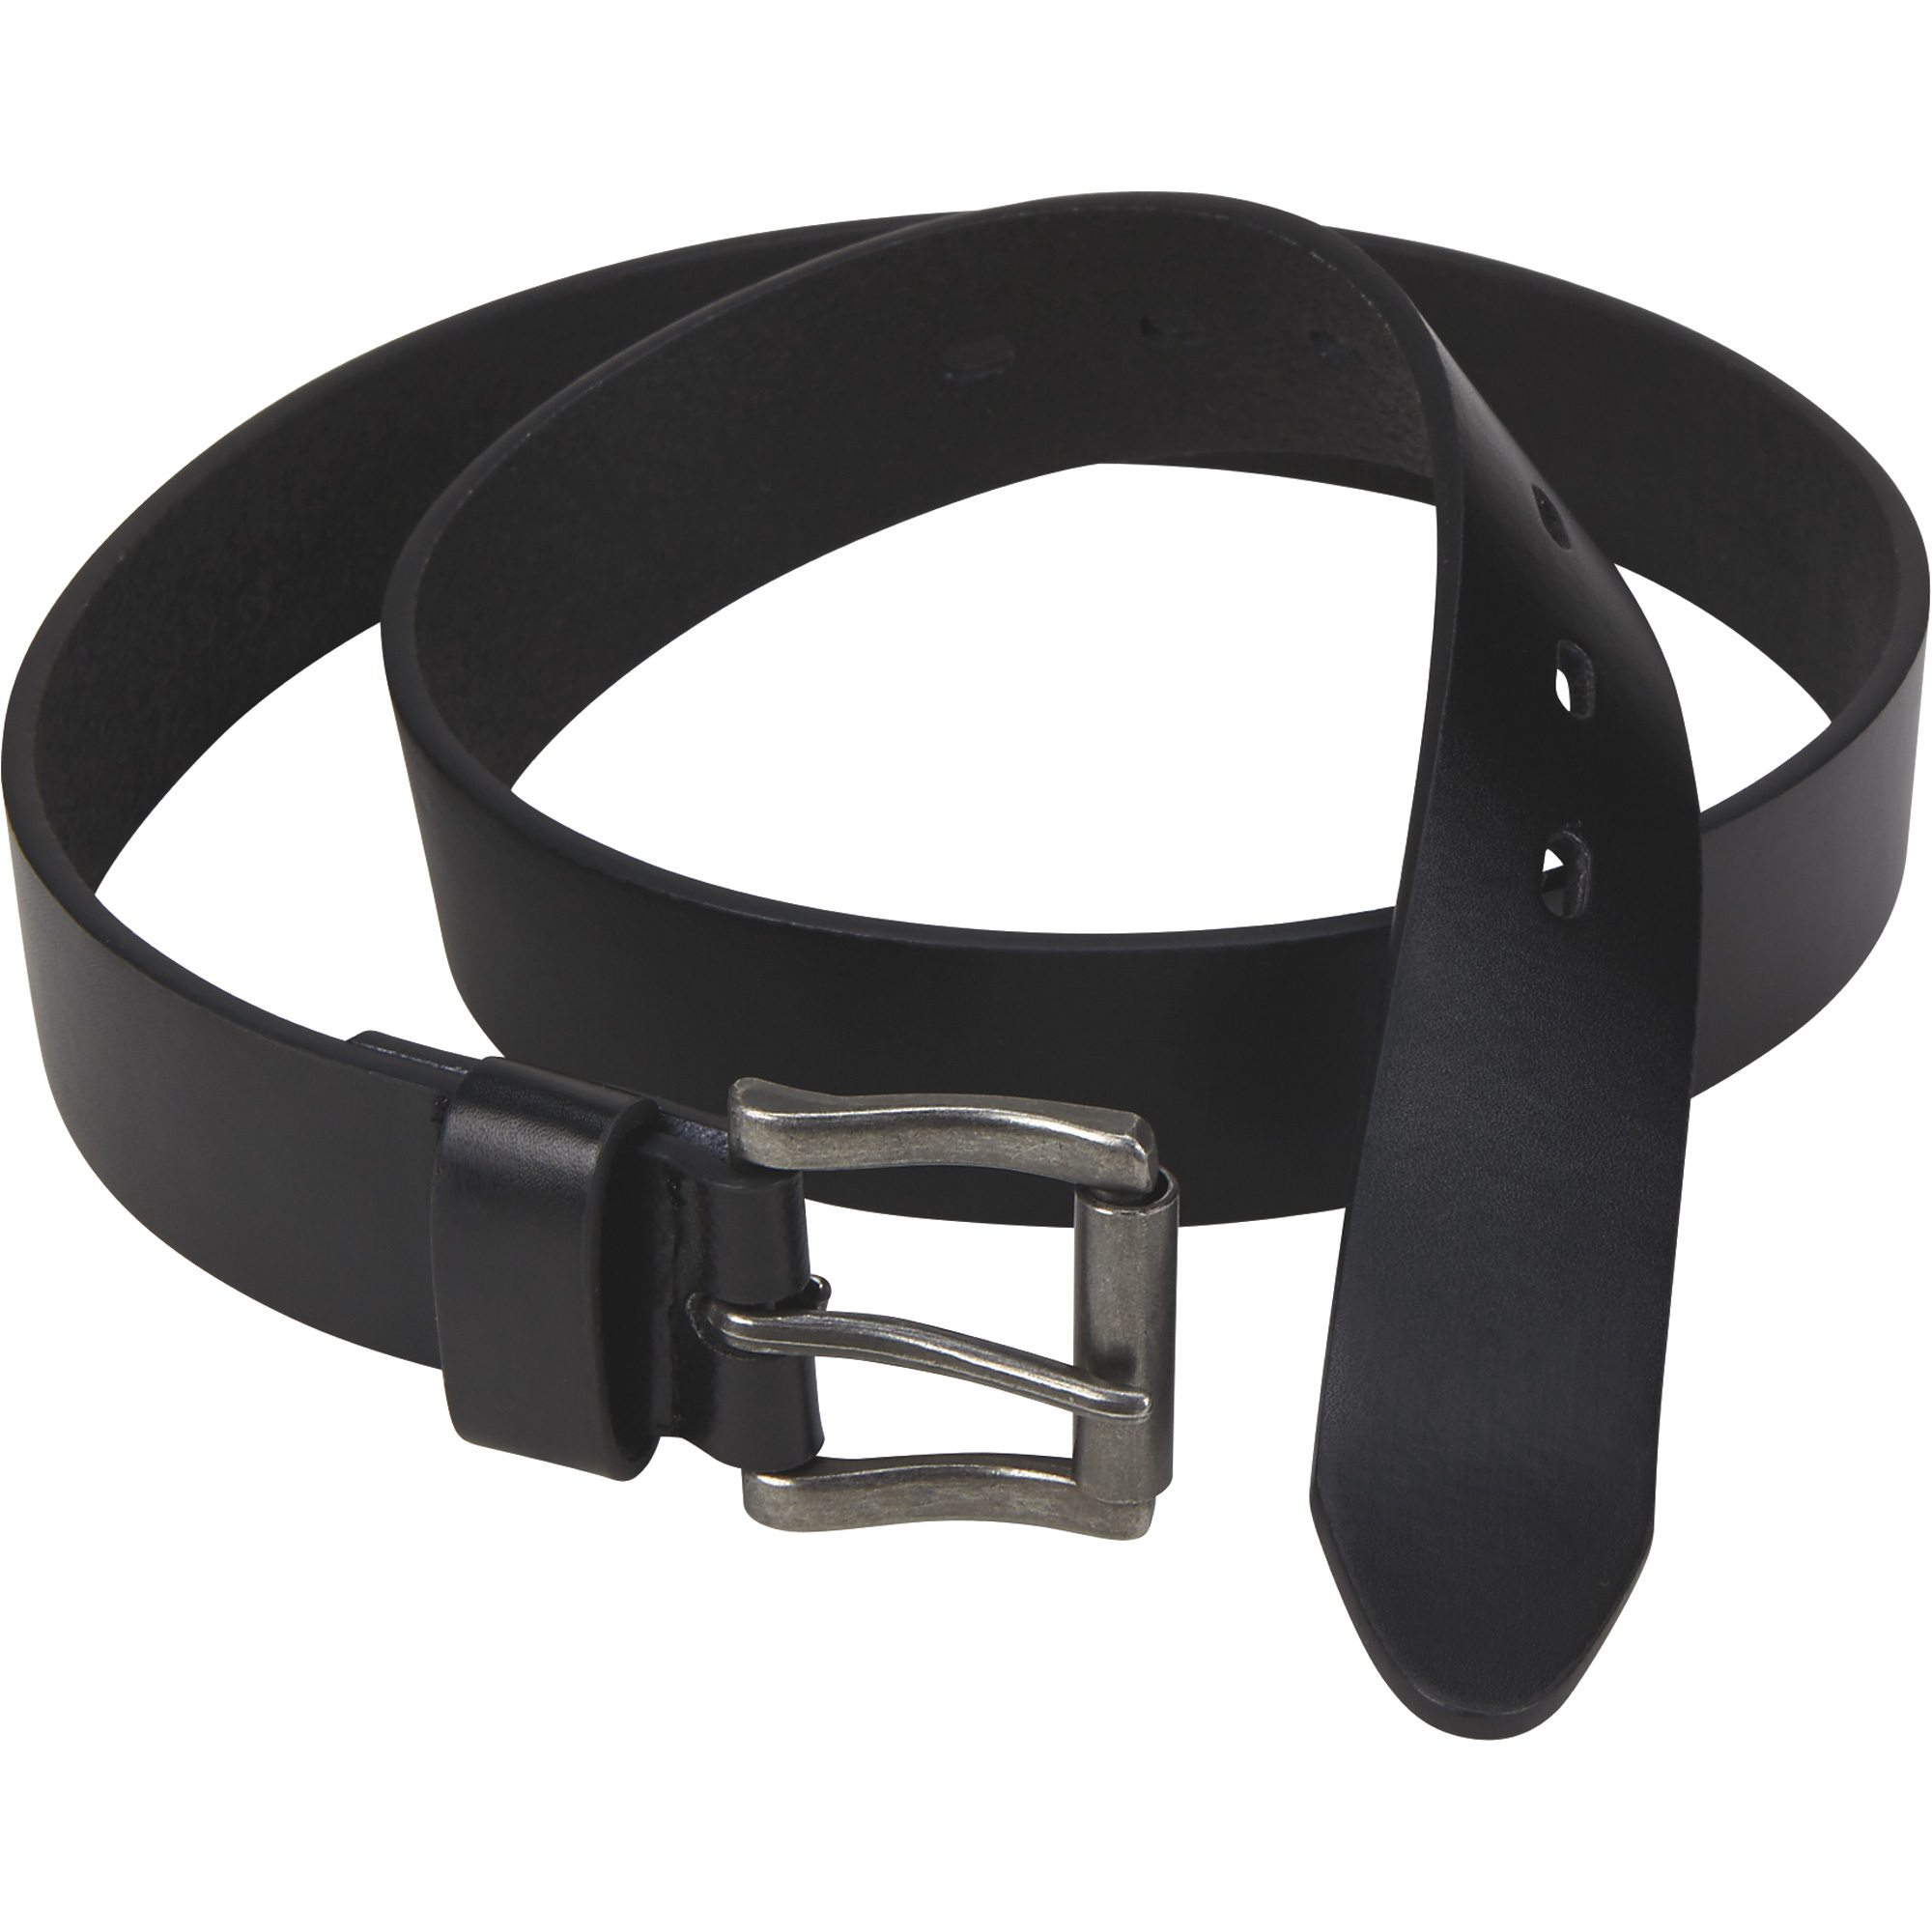 Ironton Leather Belt - Black, Size 36, Model 9763